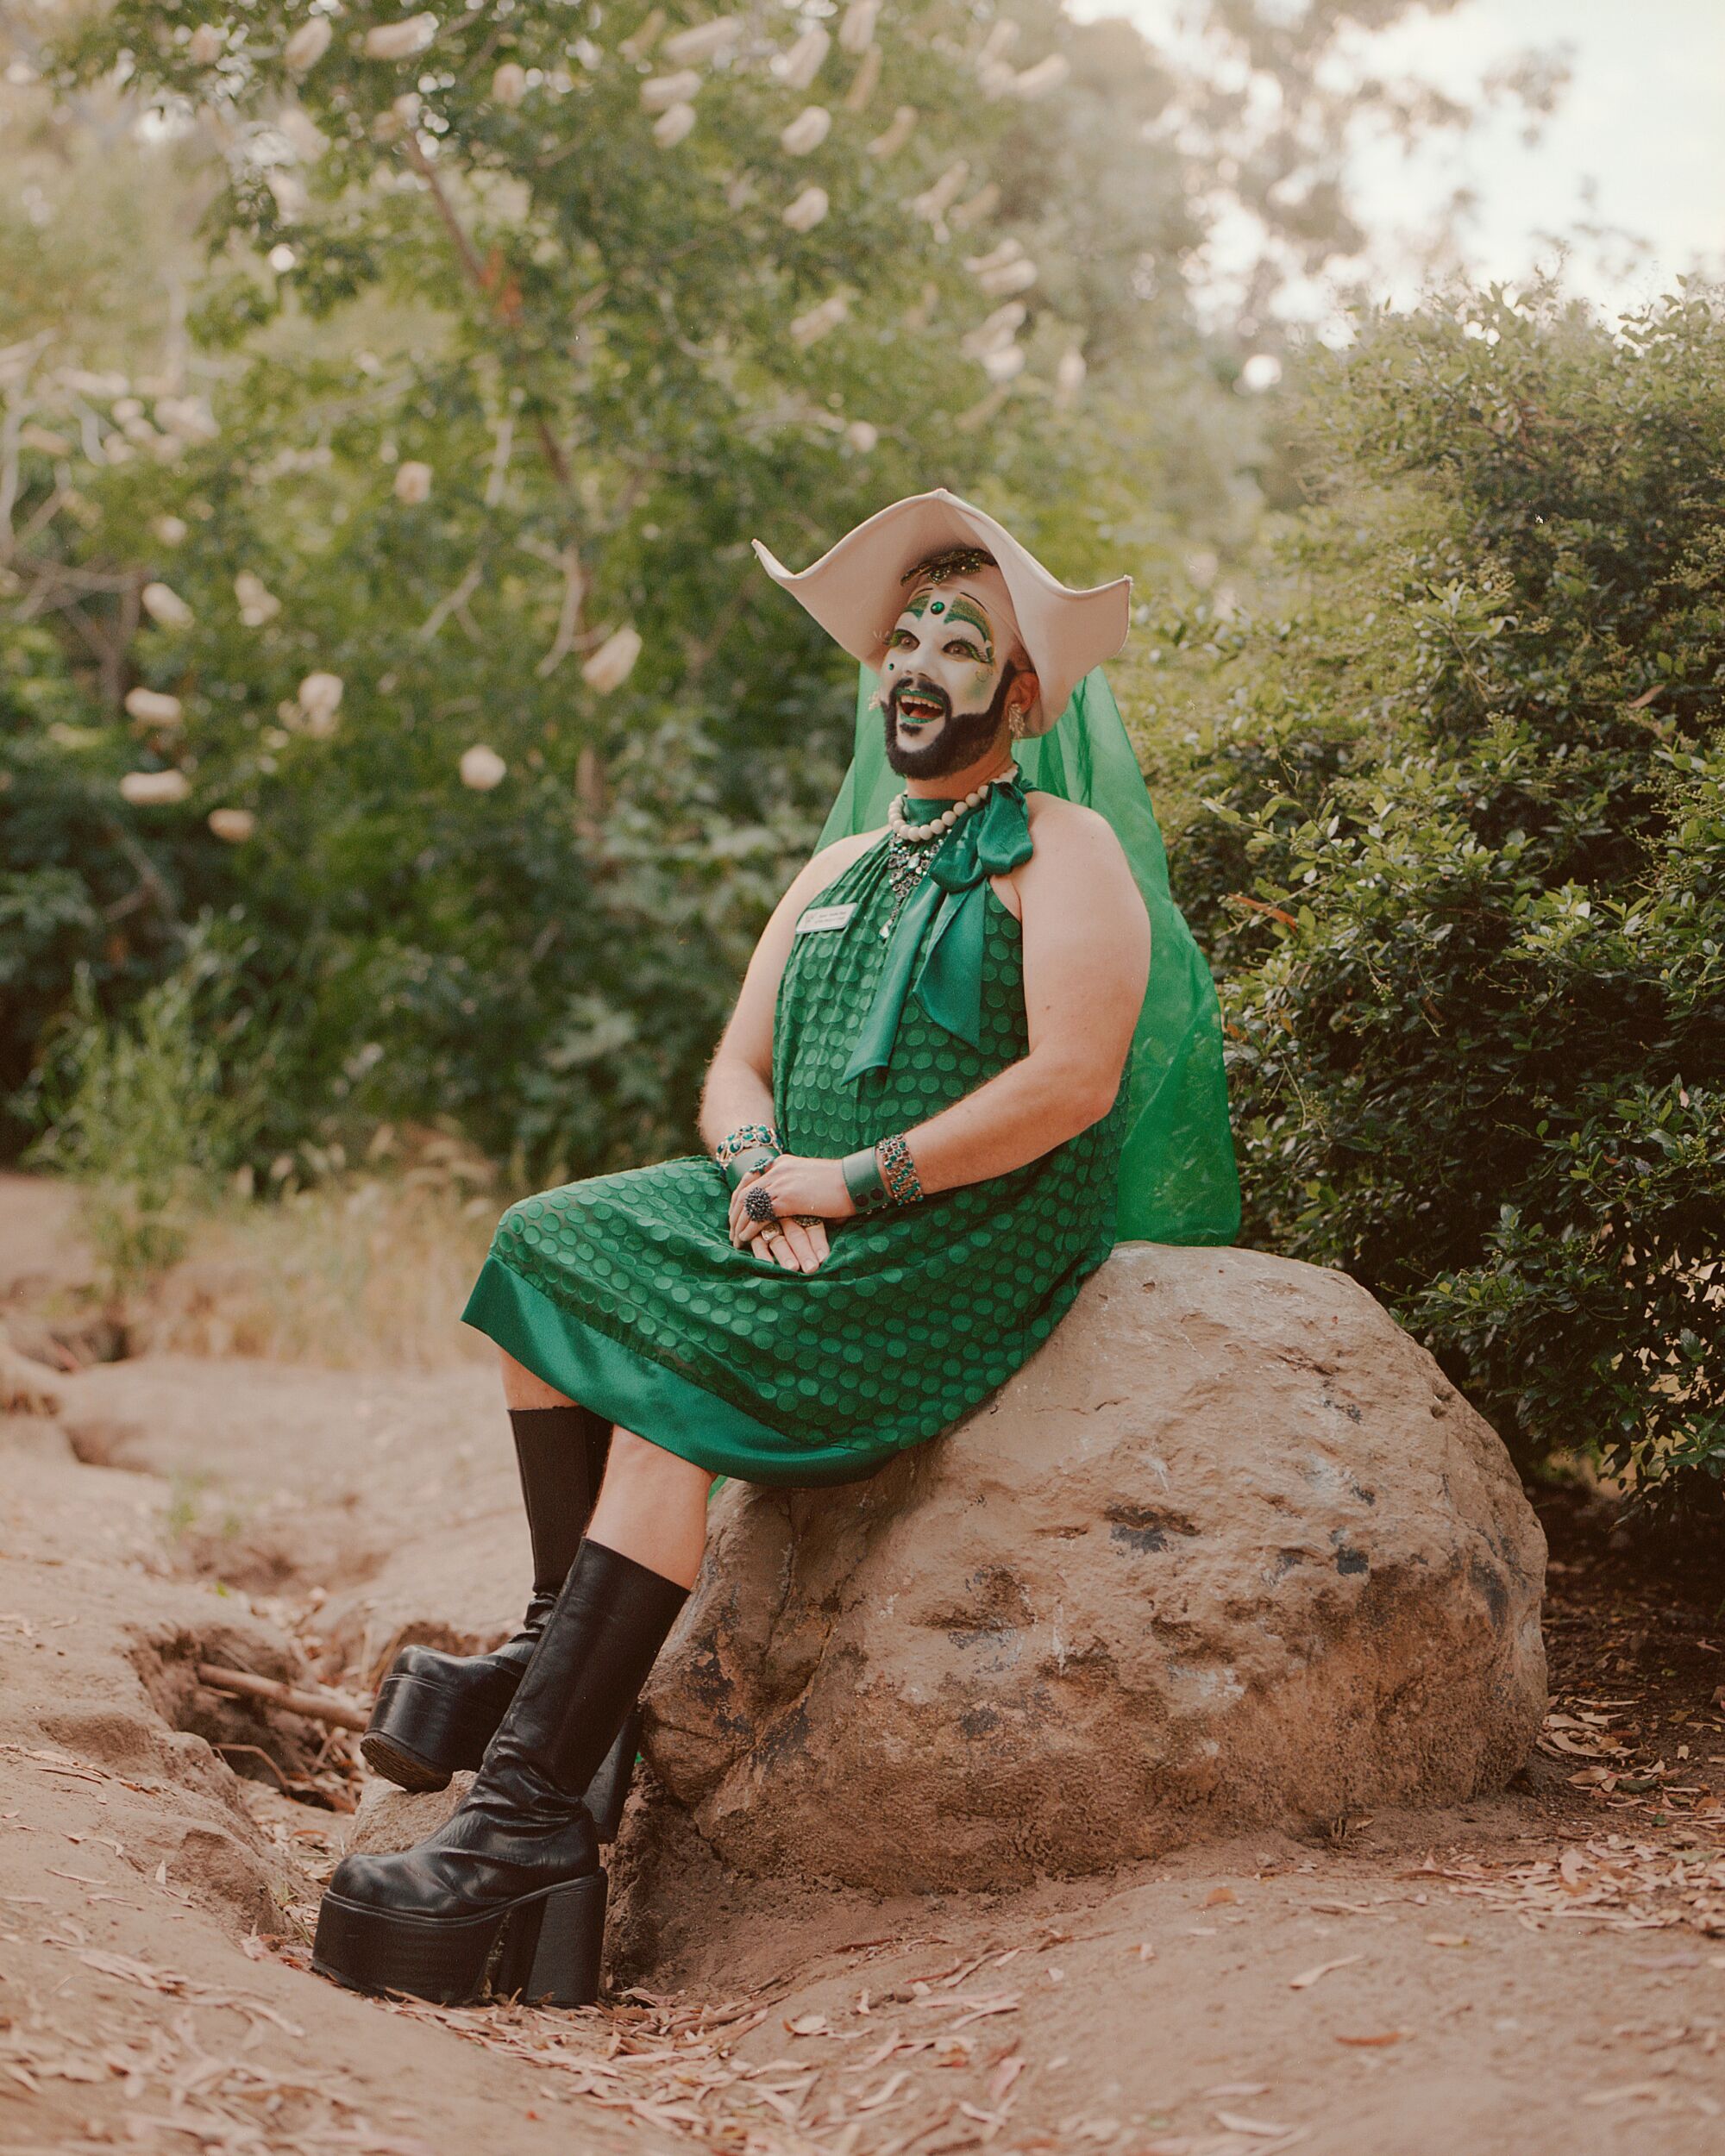 हरे रंग की पोशाक और बूटों में एक ड्रैग नन बाहर एक शिलाखंड पर बैठी है।